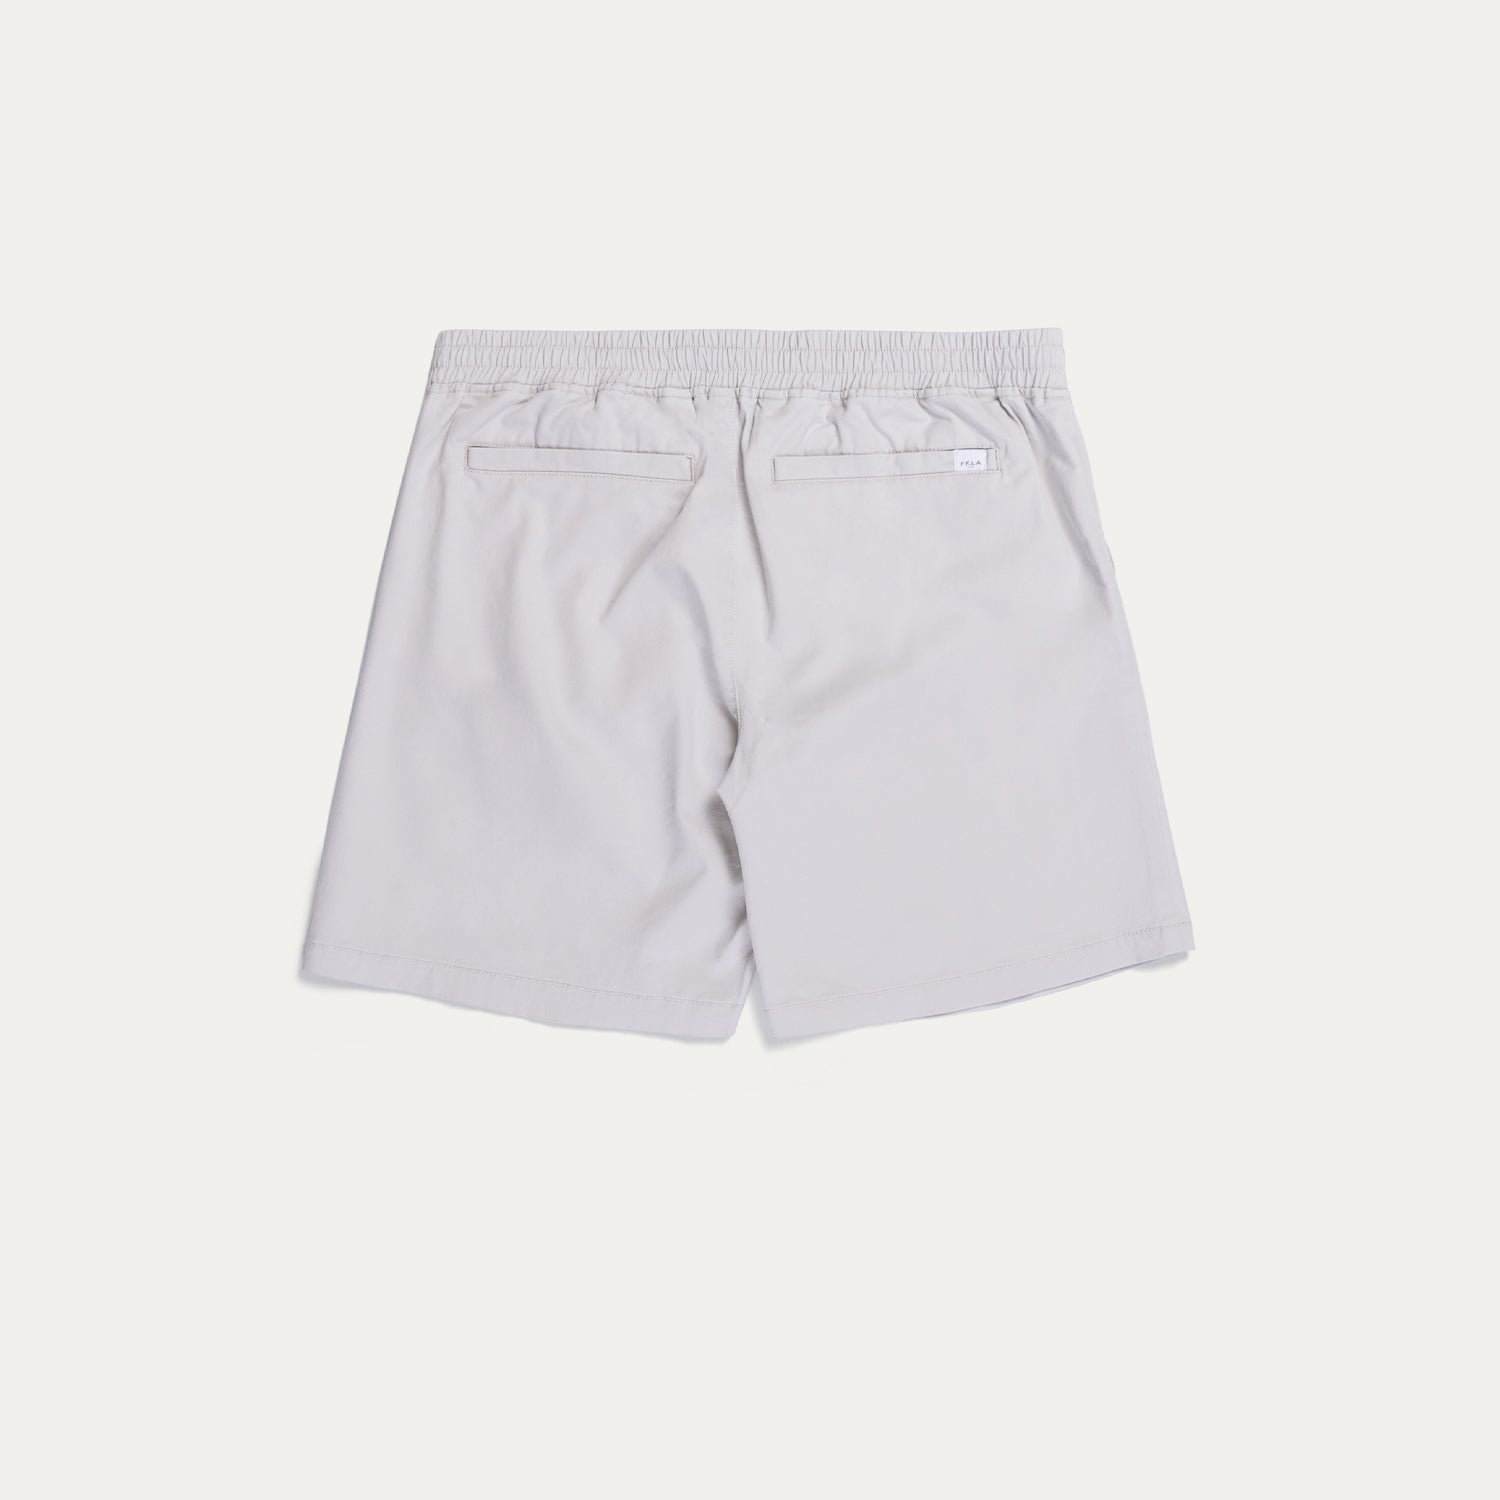 Newport Twill Shorts – New Republic